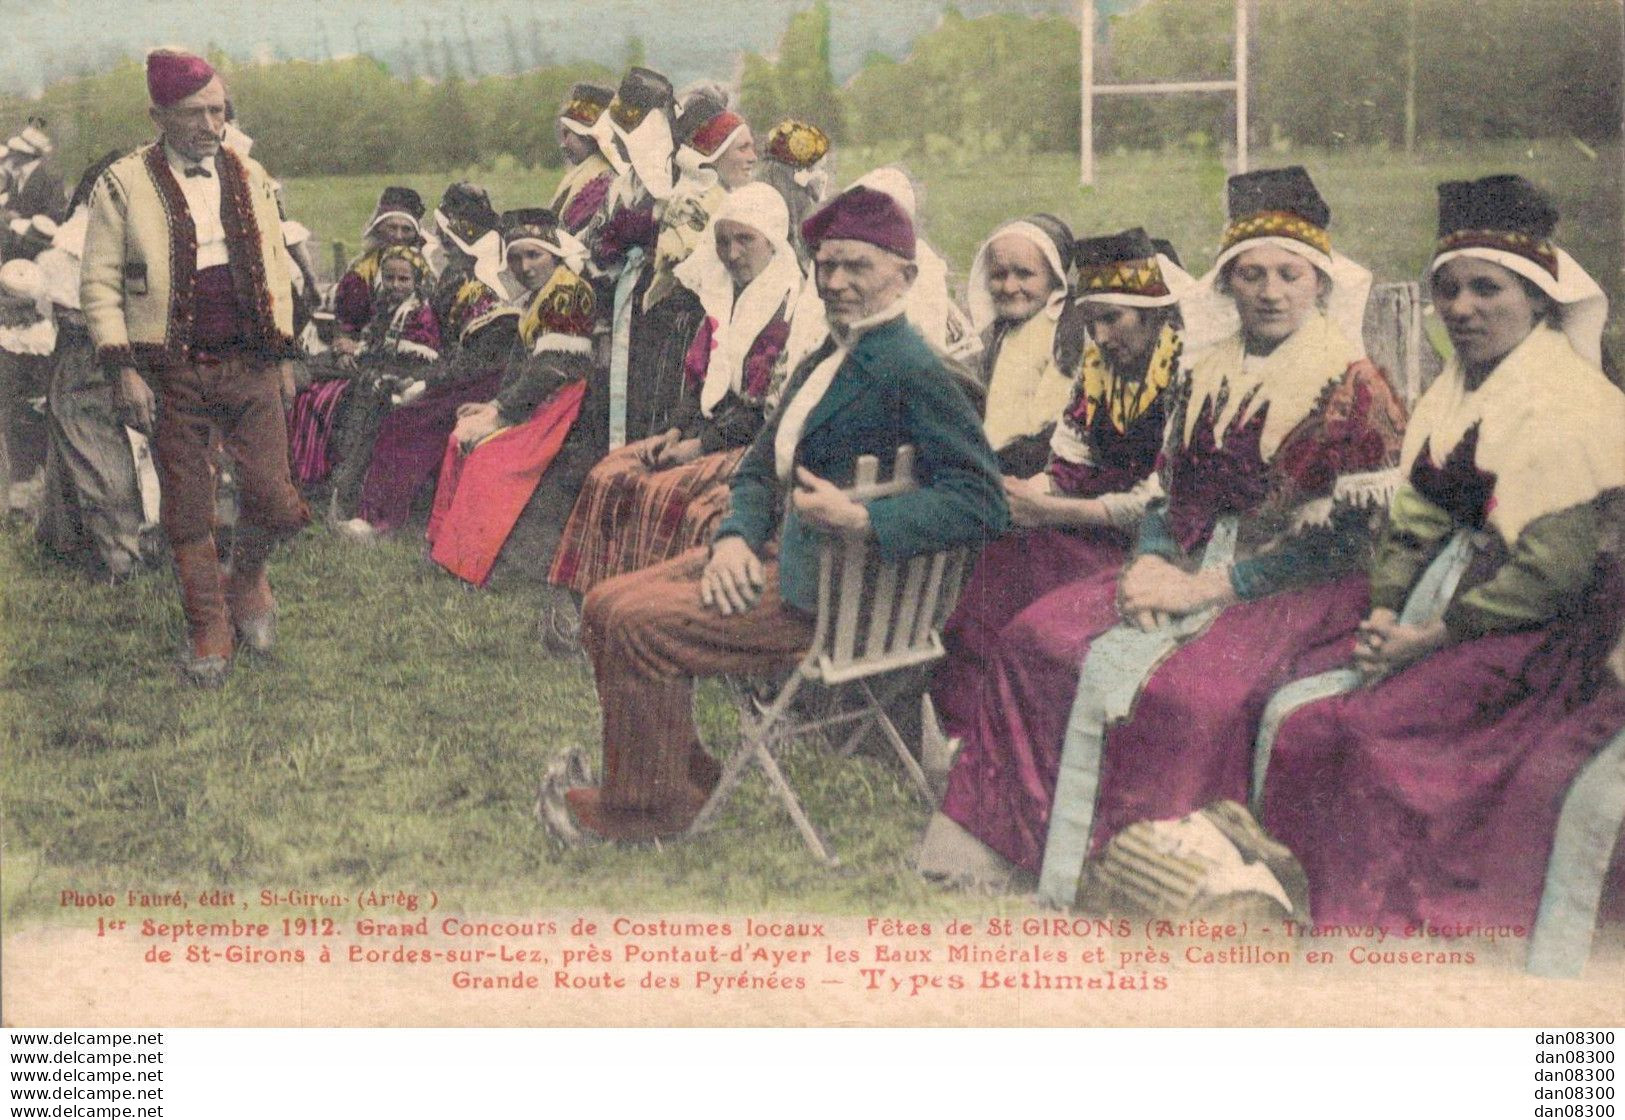 09 01 SEPTEMBRE 1912 GRAND CONCOURS DE COSTUMES LOCAUX FETES DE SAINT GIRONS - Costumes